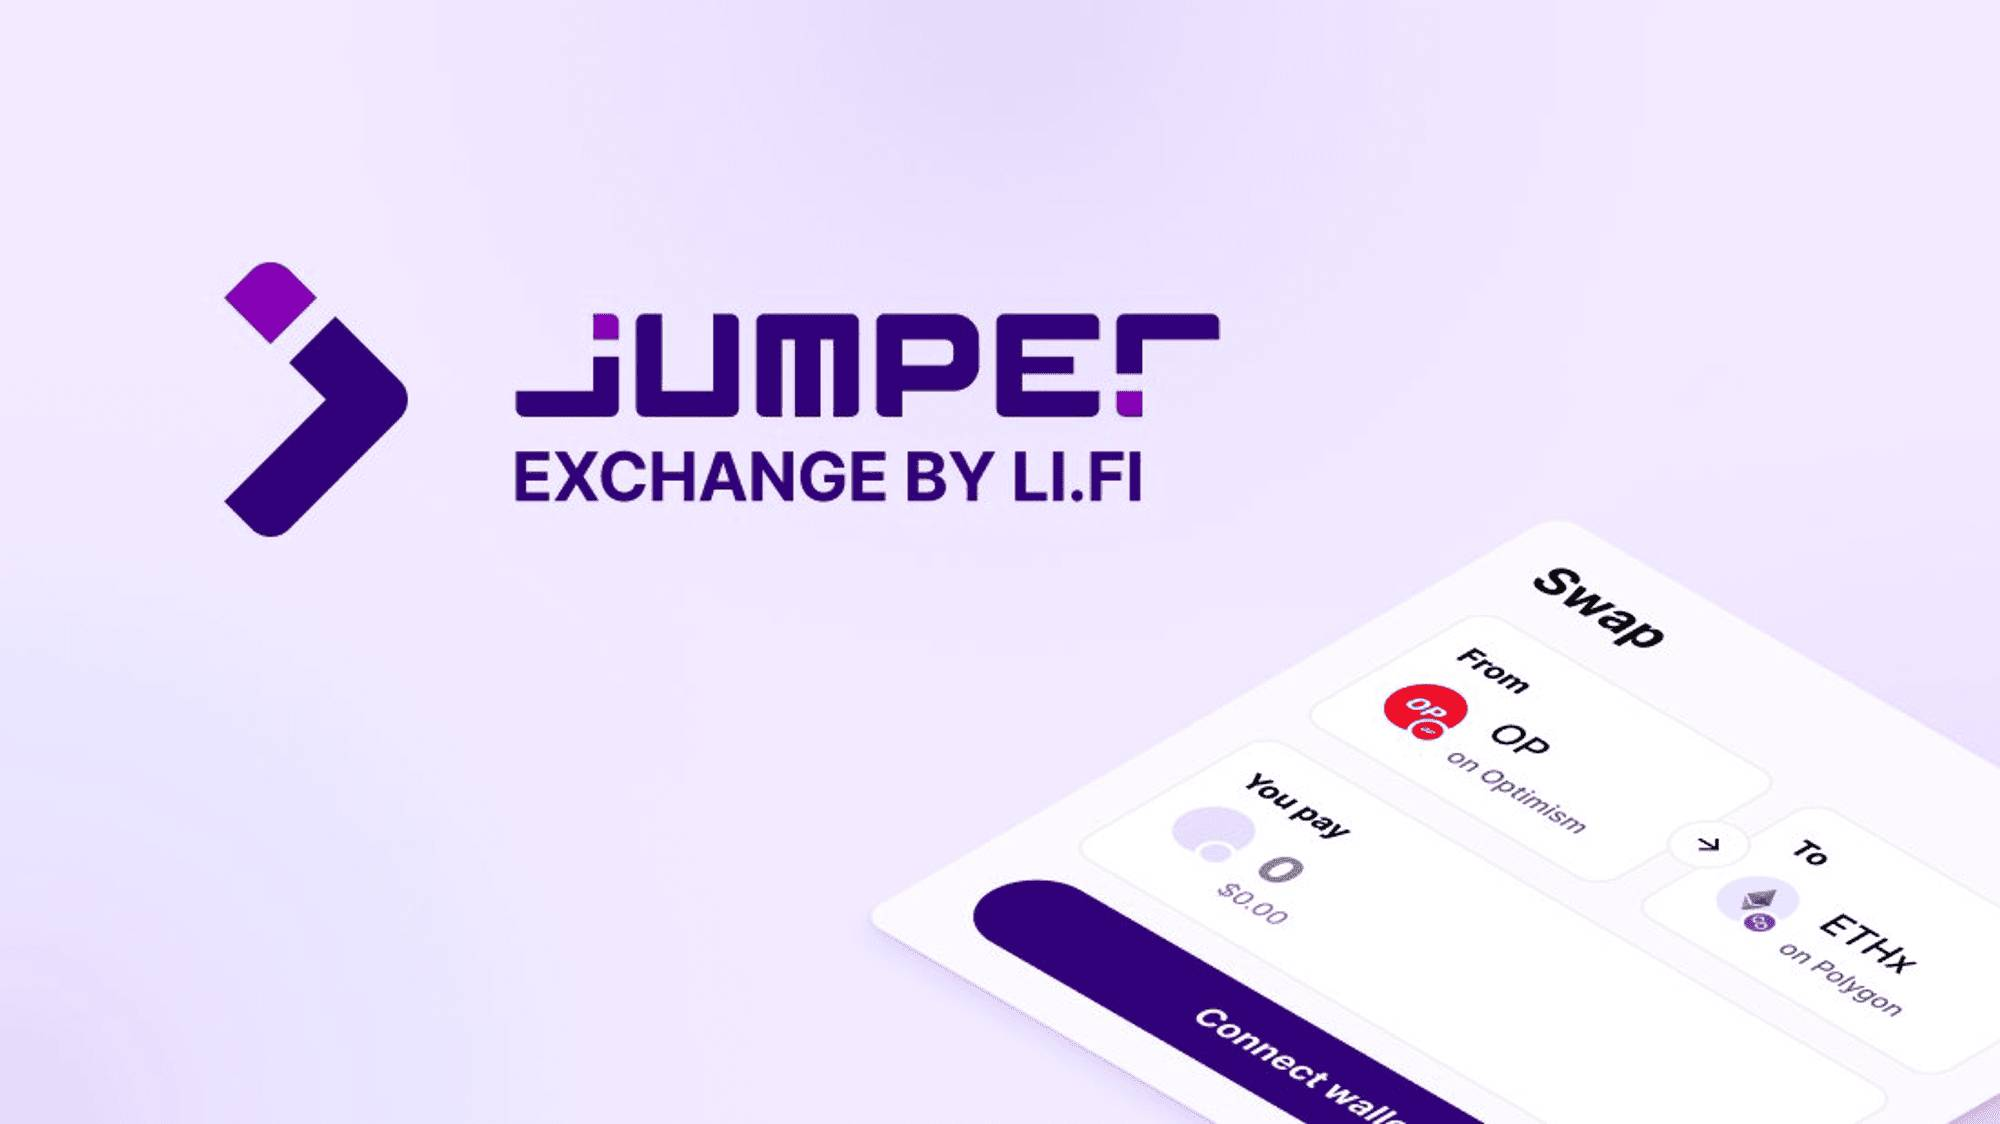 Jumper Exchange Là Gì?